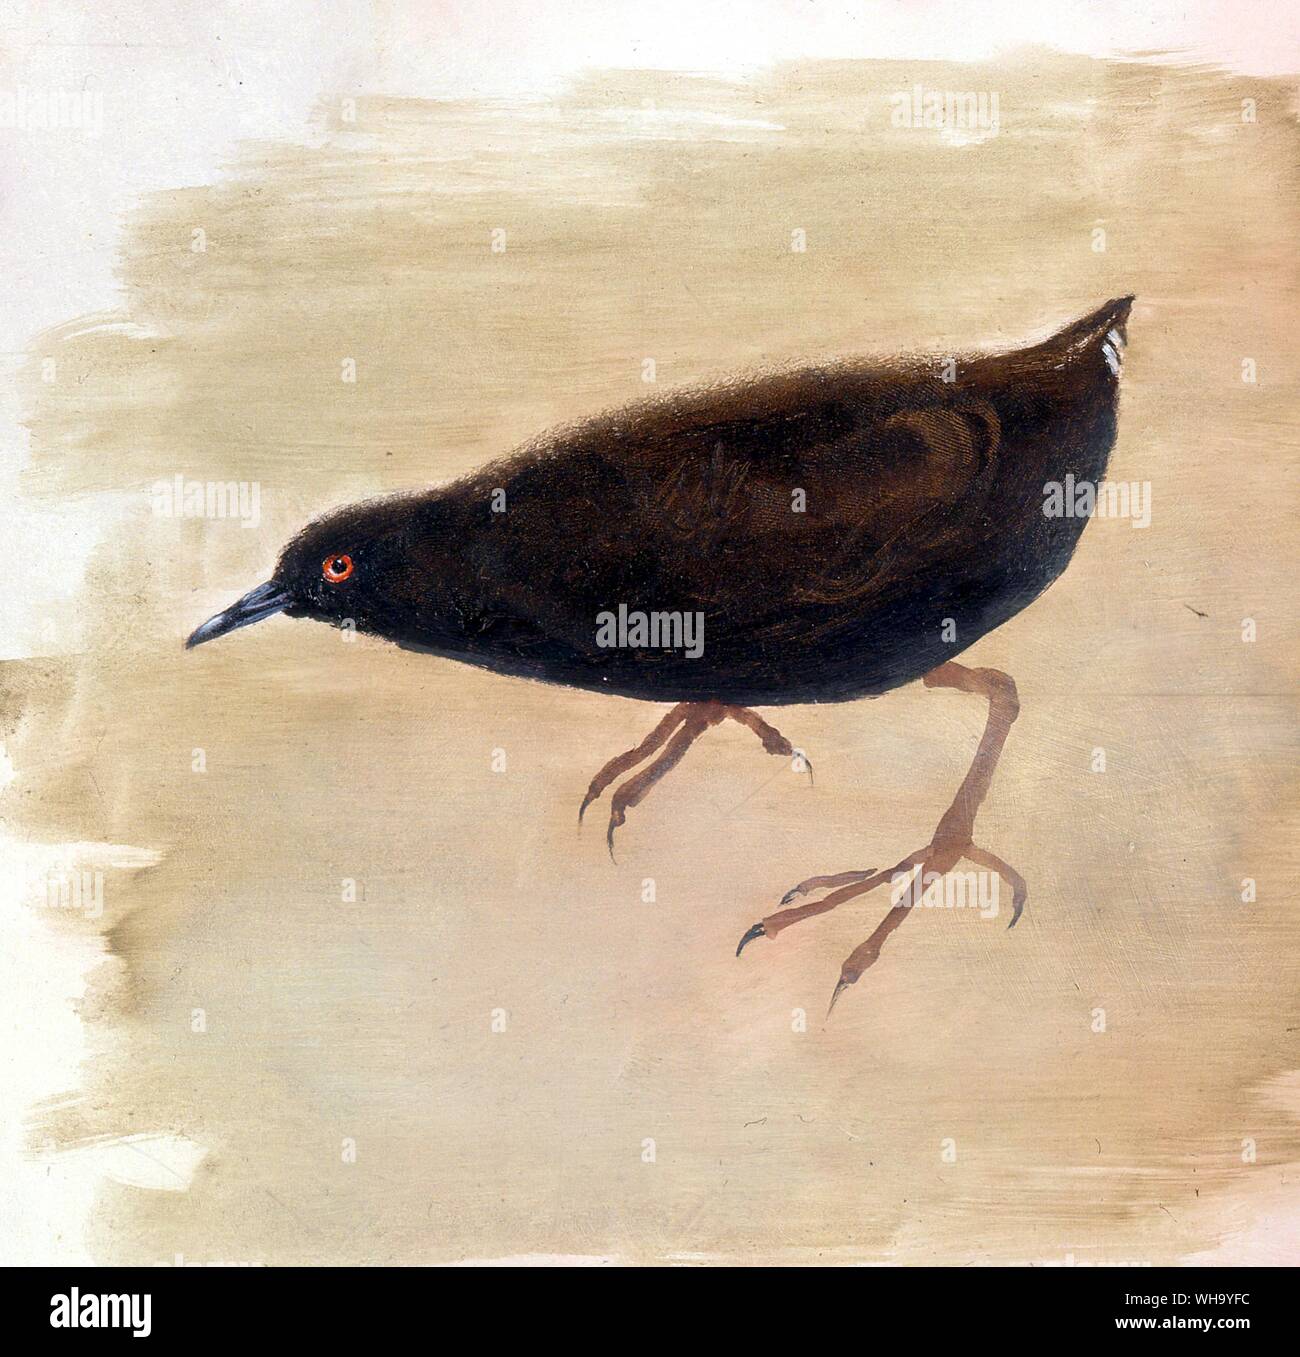 Kusaie Insel Crakear. Ölgemälde von Carolyn Sinclair-Smith. - Länge der Vogel, 18 cm (7 in) Stockfoto